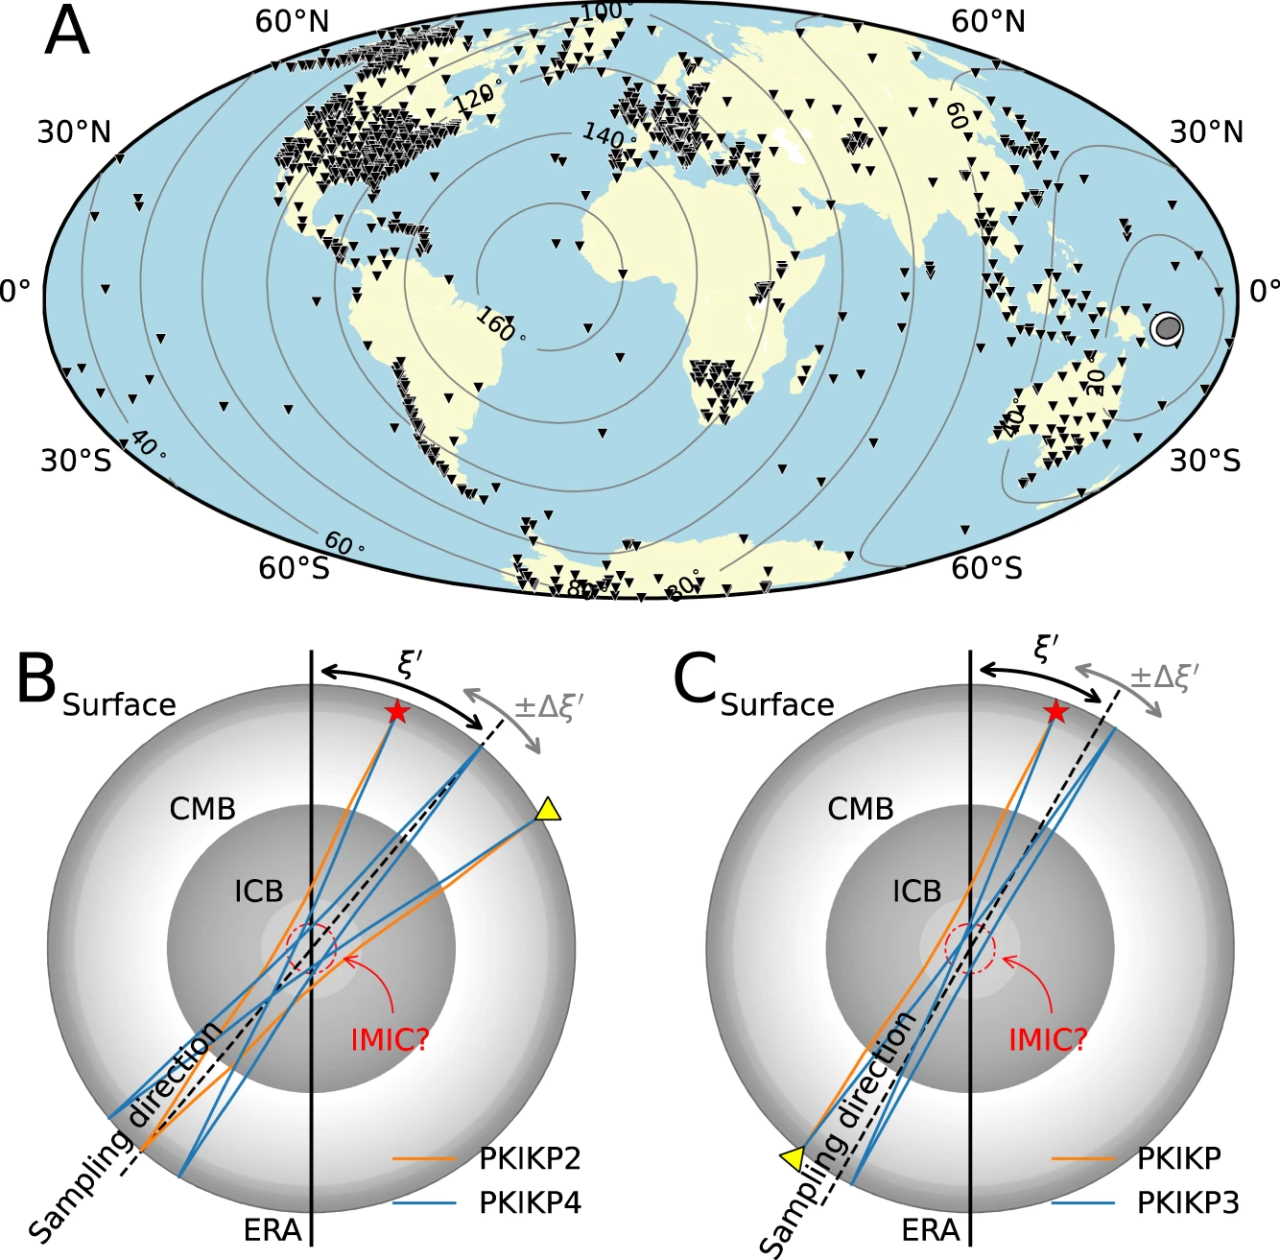 Чорними трикутниками позначені місця розташування сейсмічних станцій, дані яких використовували в дослідженні, а&amp;nbsp;сірими контурами позначено відстані від епіцентру землетрусу на Соломонових островах магнітудою 7,9, яке стало у 2017 році. Отримані з його допомогою дані також допомогли у дослідженні (А). На (B) і (С) можна побачити місце, де знаходиться ядро внутрішнього ядра, яке відшукали вчені, а також траєкторії обраних для аналізу хвиль. Thanh-Son Phạm, Hrvoje Tkalčić / Nature Communications, 2023&amp;nbsp;